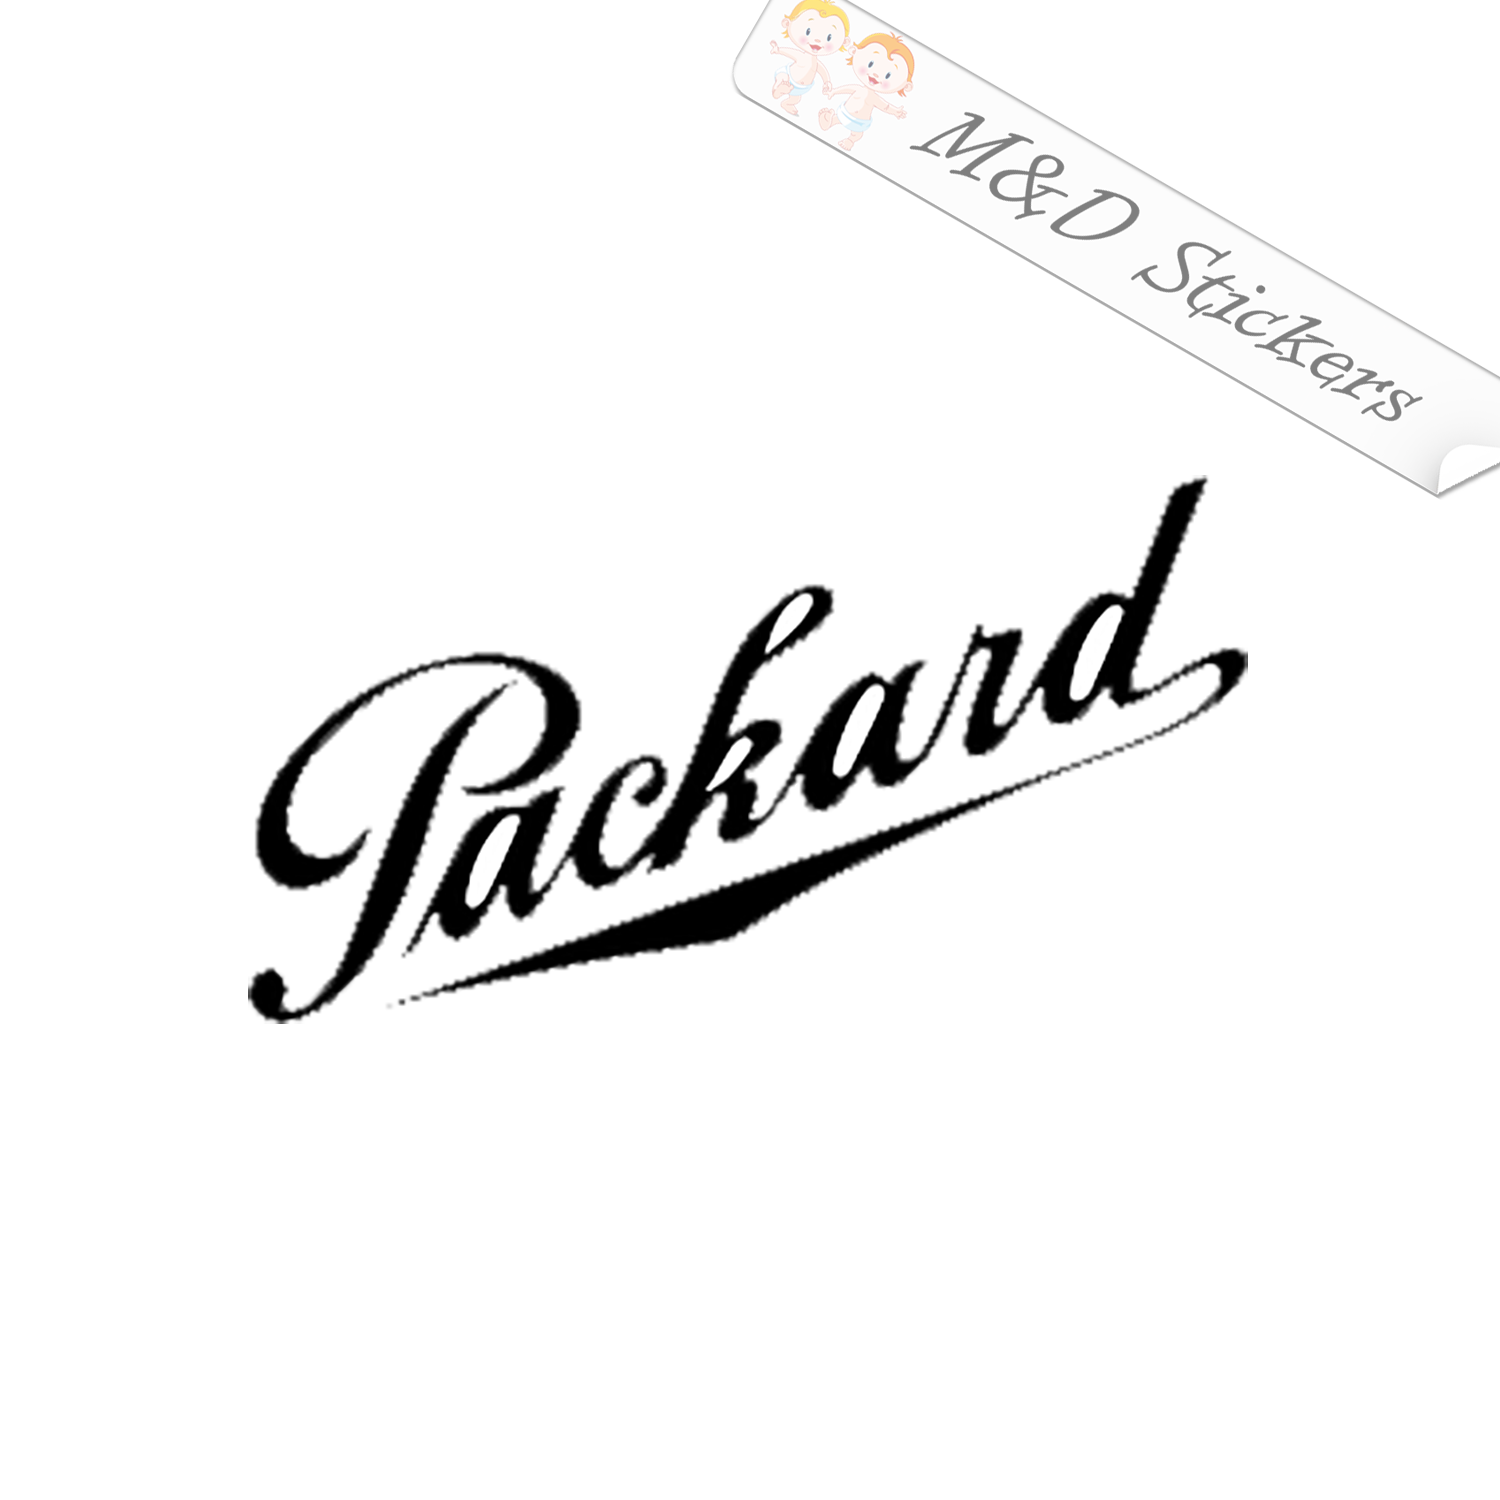 packard logo